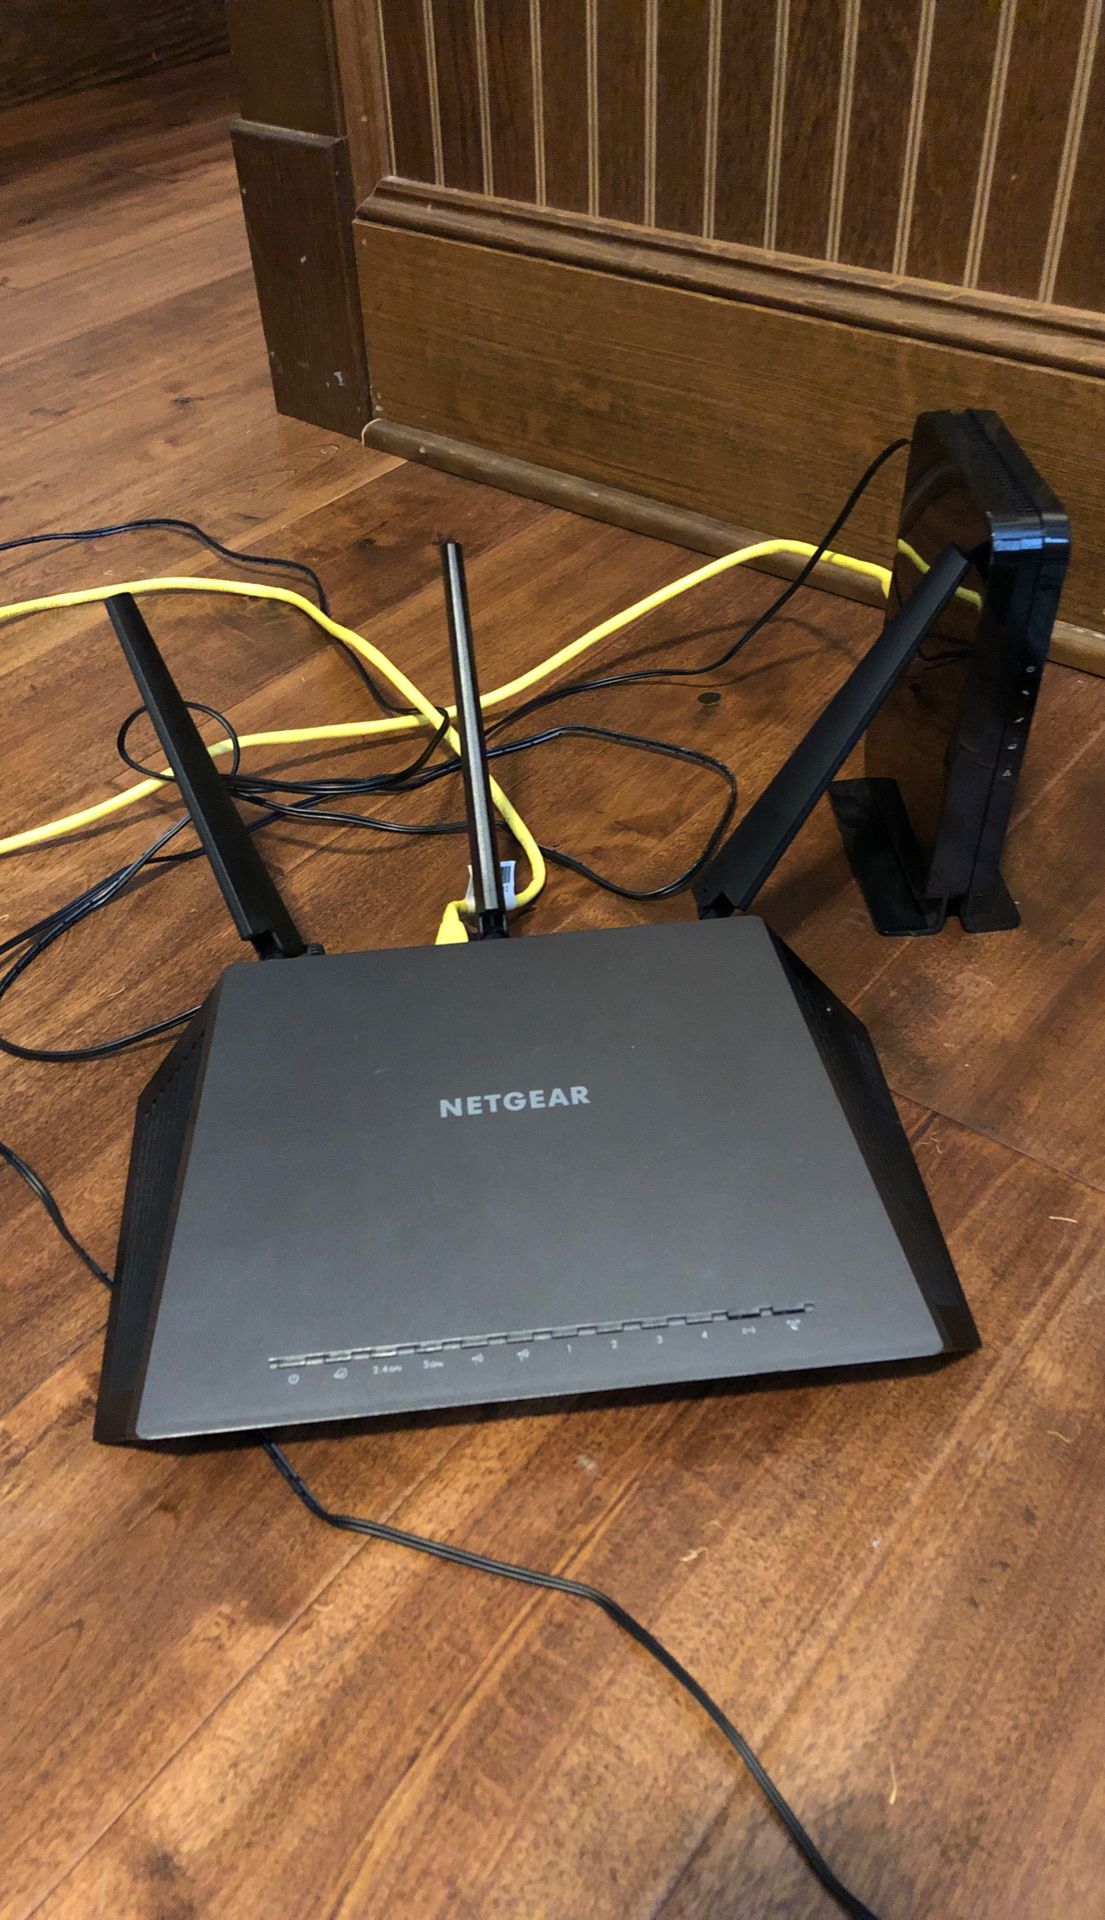 Netgear modem and router